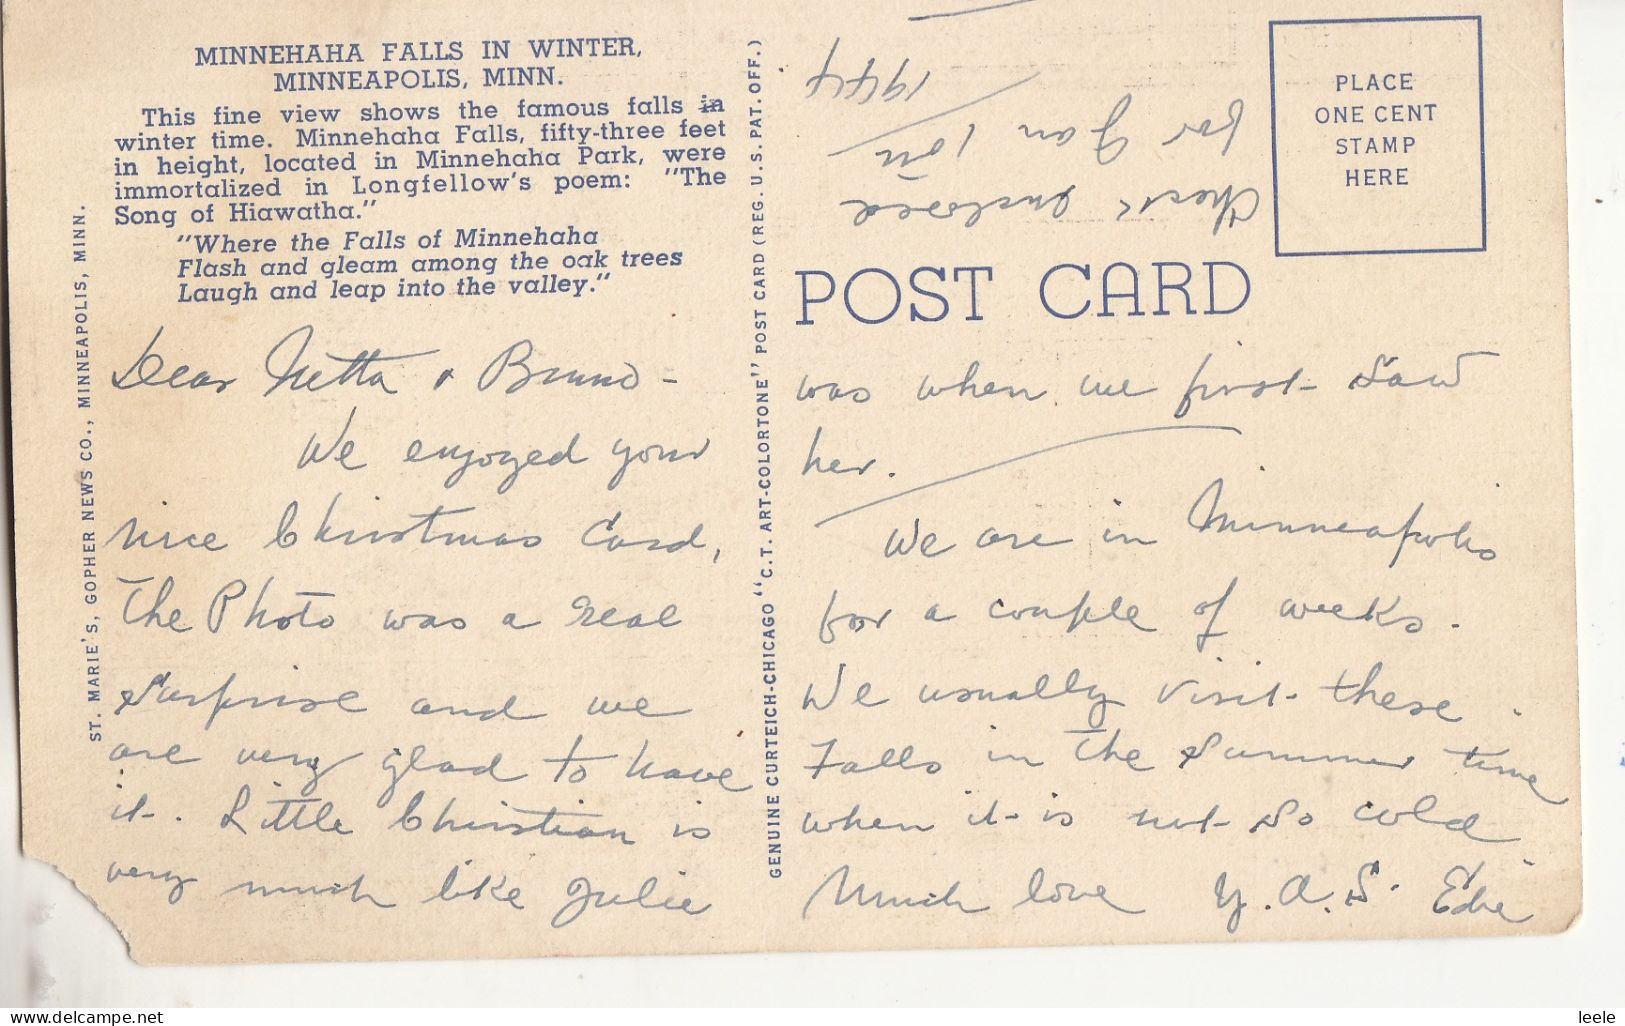 CK36. Vintage Postcard. Watchbell Street, Rye, Sussex - Rye